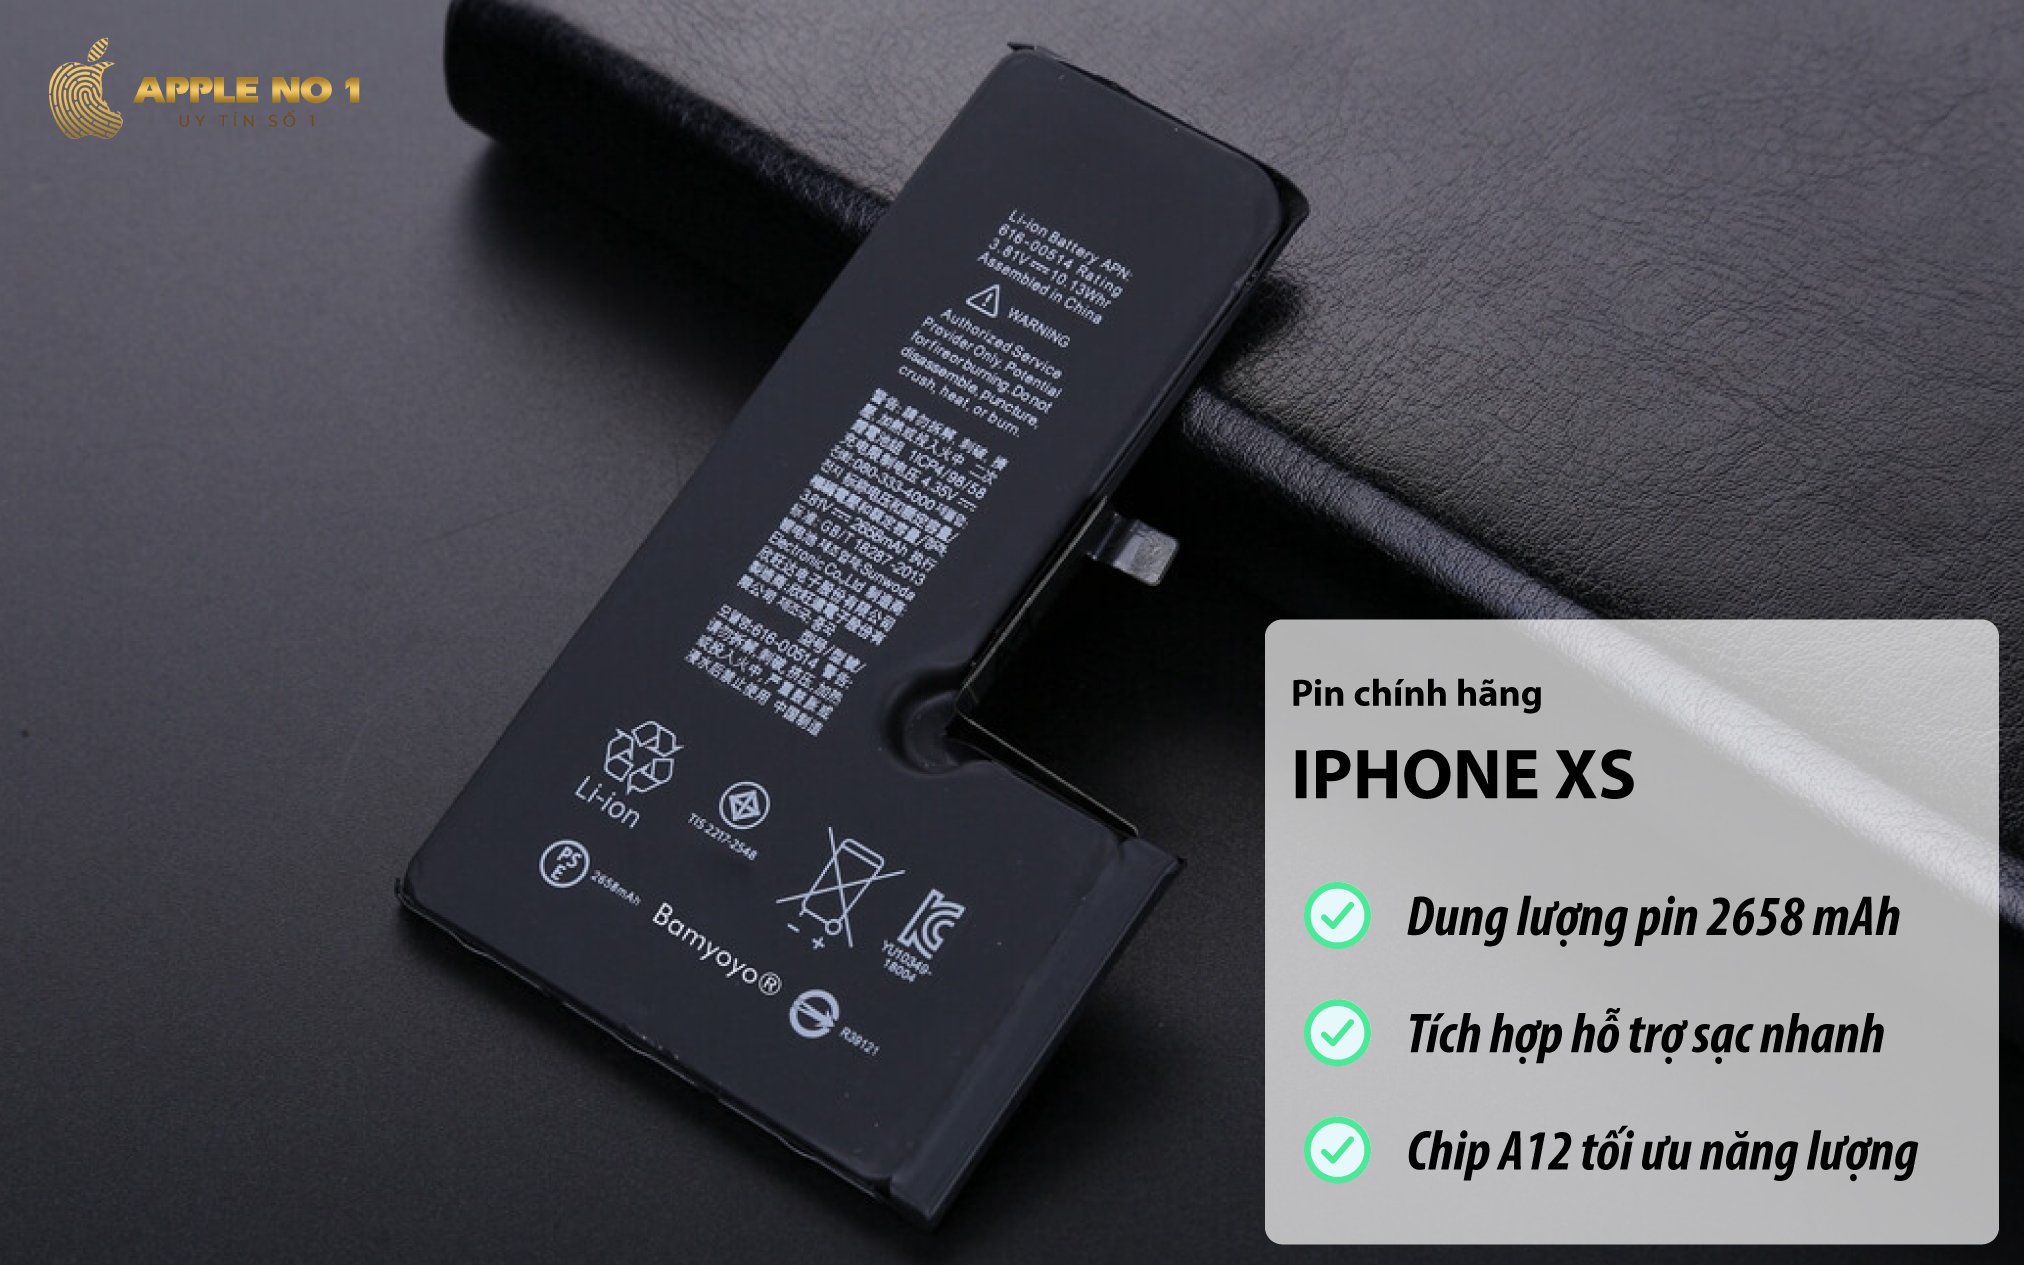 Điện thoại iPhone XS sở hữu dung lượng pin 2658 mAh, tích hợp sạc nhanh